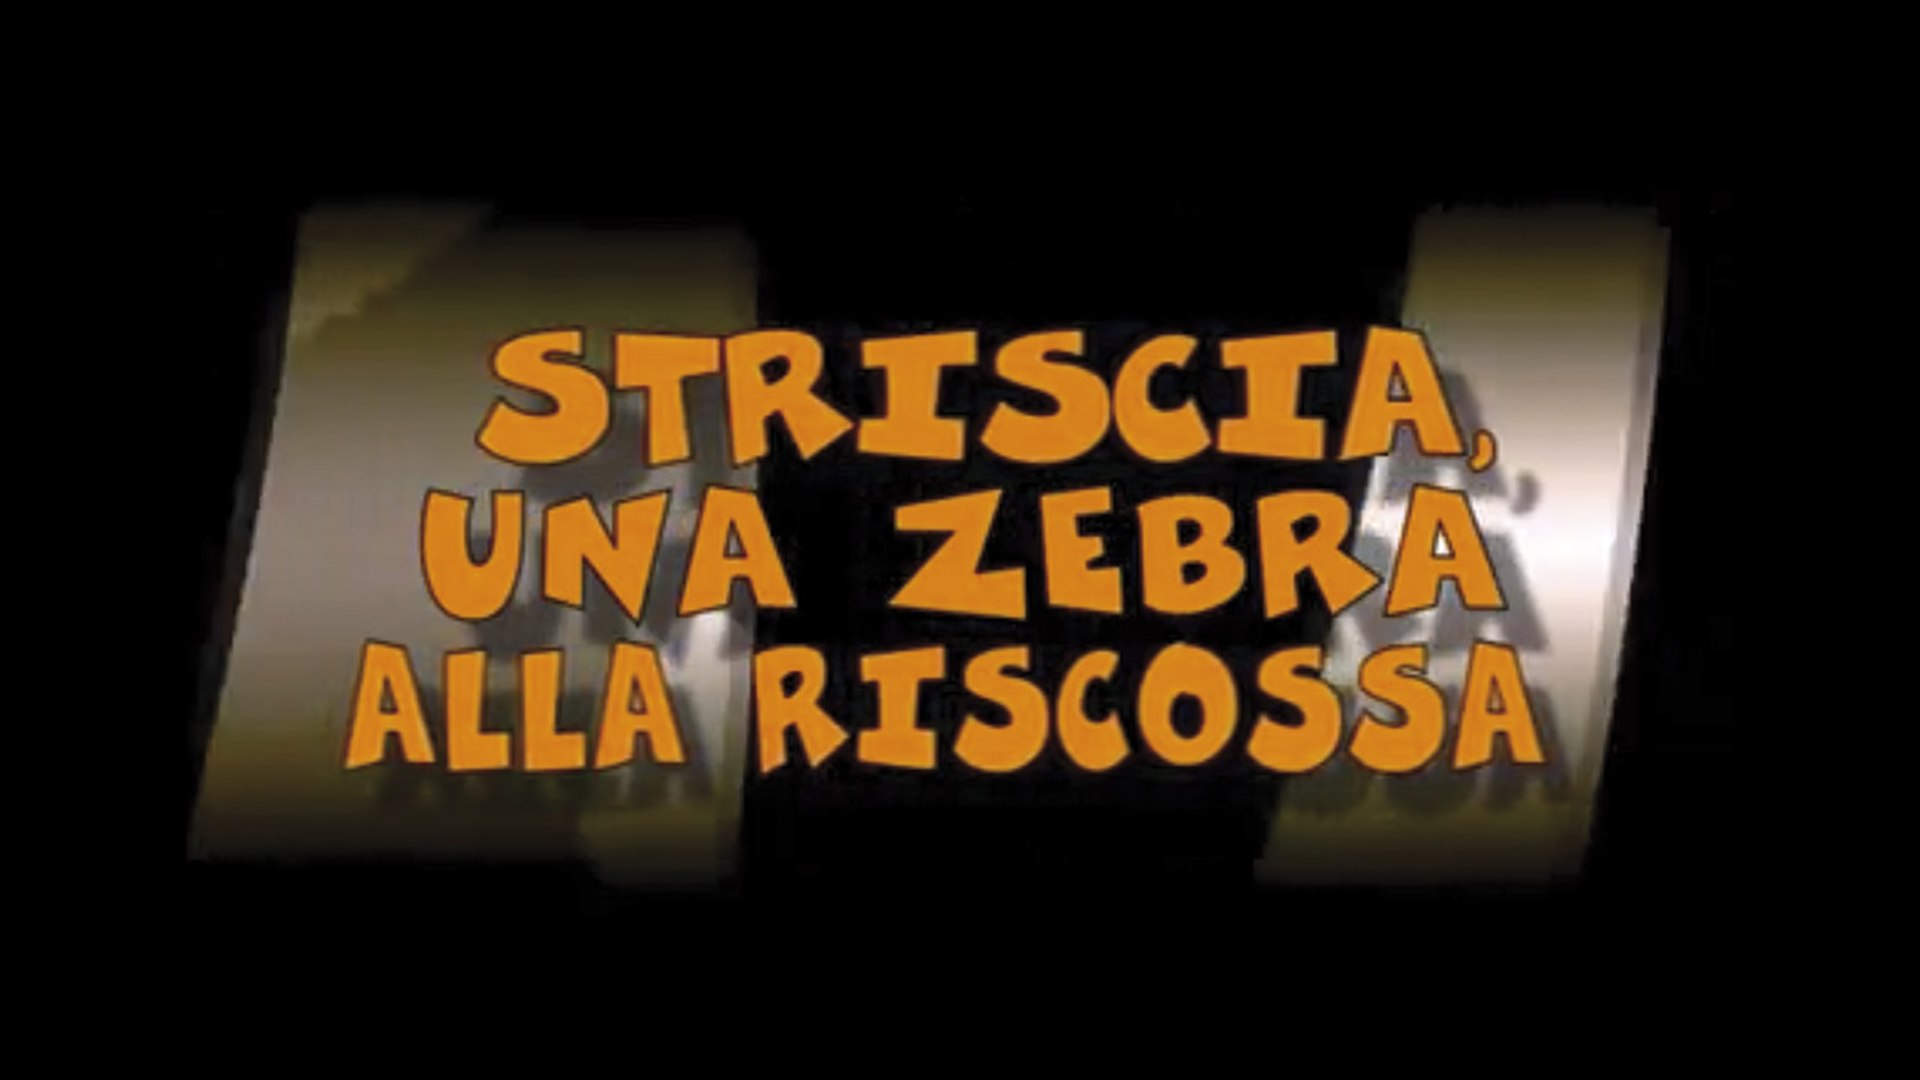 Striscia, una zebra alla riscossa (2005) Online Rip - Video Dailymotion